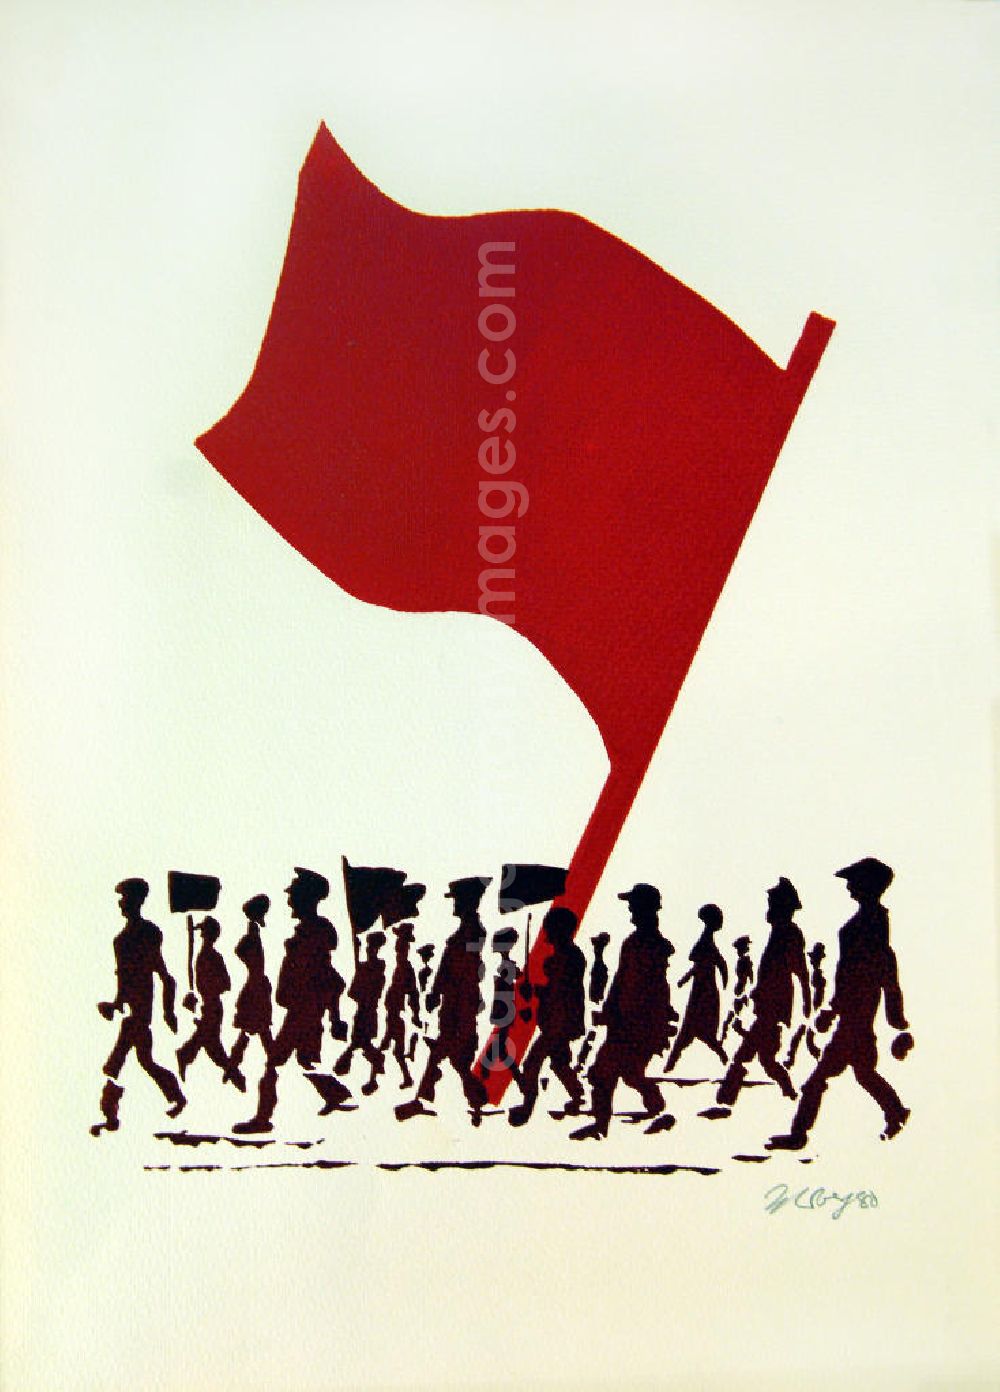 Berlin: Grafik von Herbert Sandberg (abgewandeltes Motiv von Blatt 3 der Mappe „Kommunistisches Manifest“, statt Rikscha eine rote Fahne Rote Fahne / Flagge) aus dem Jahr 1980, 29,